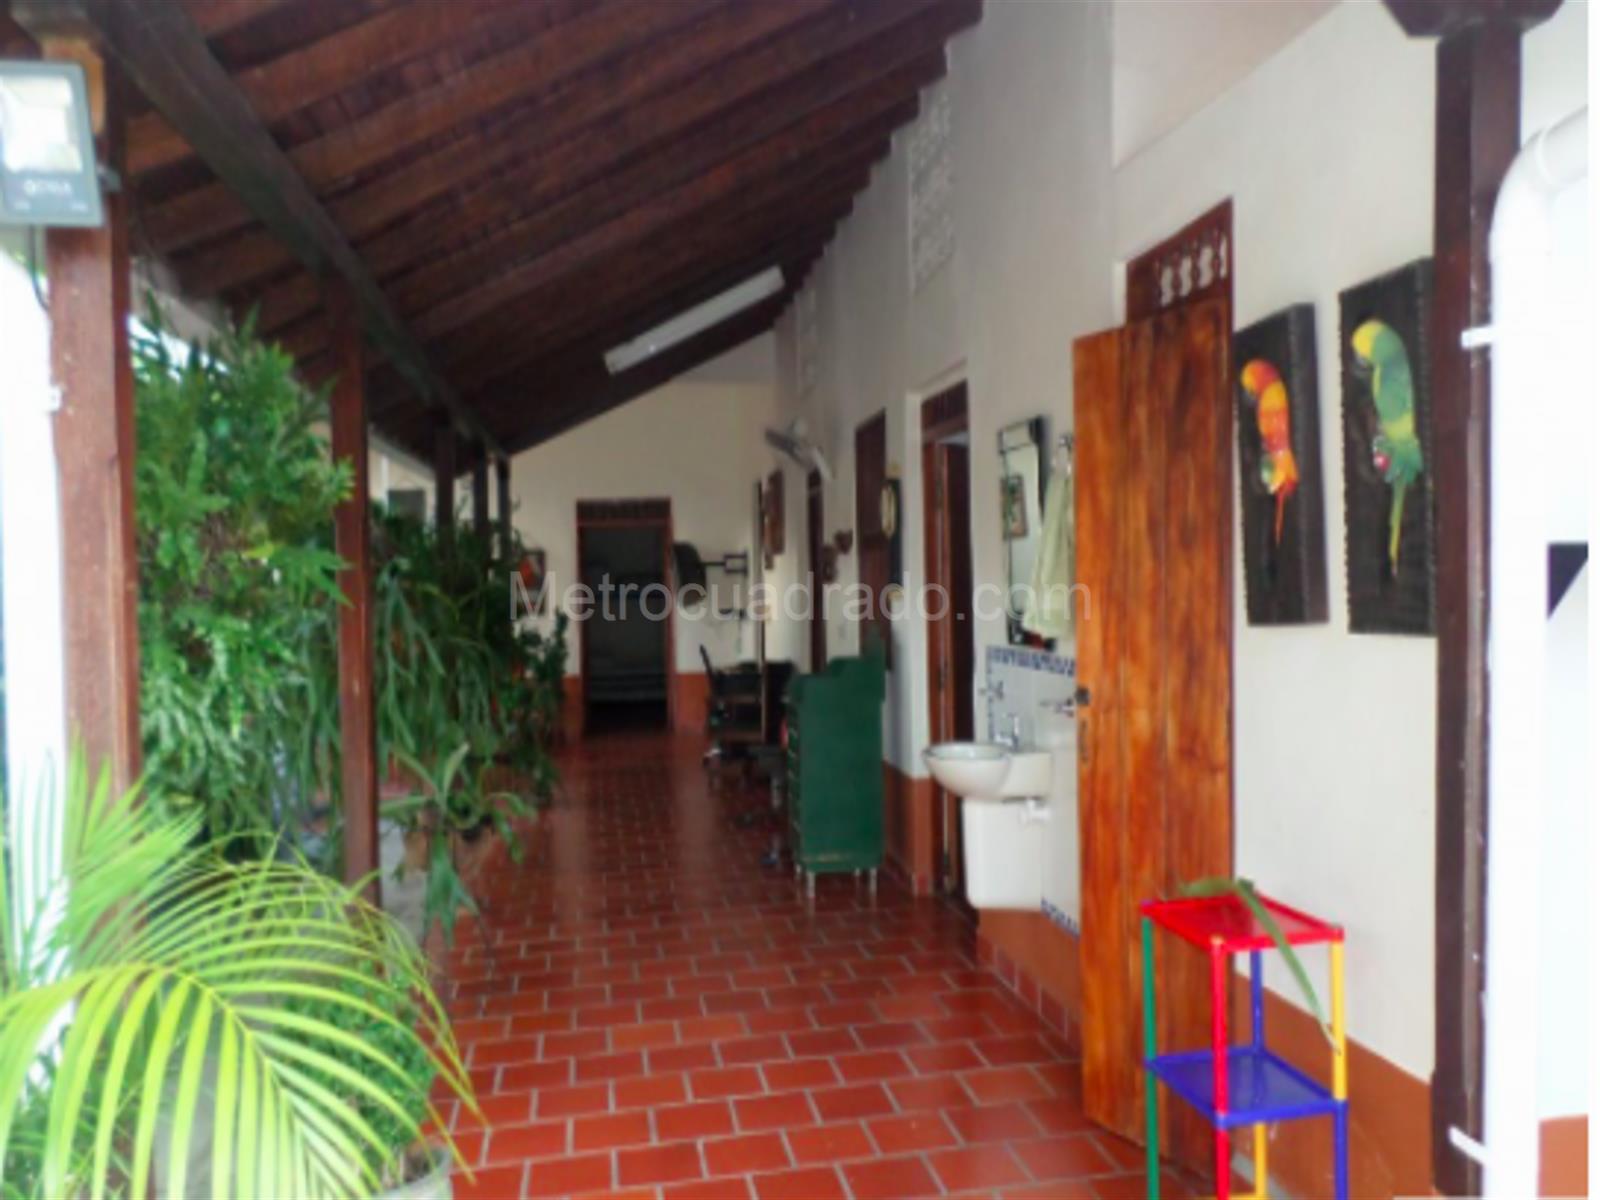 Venta de Casa en Santa fe de antioquia - Medellín - 3147-M2032883